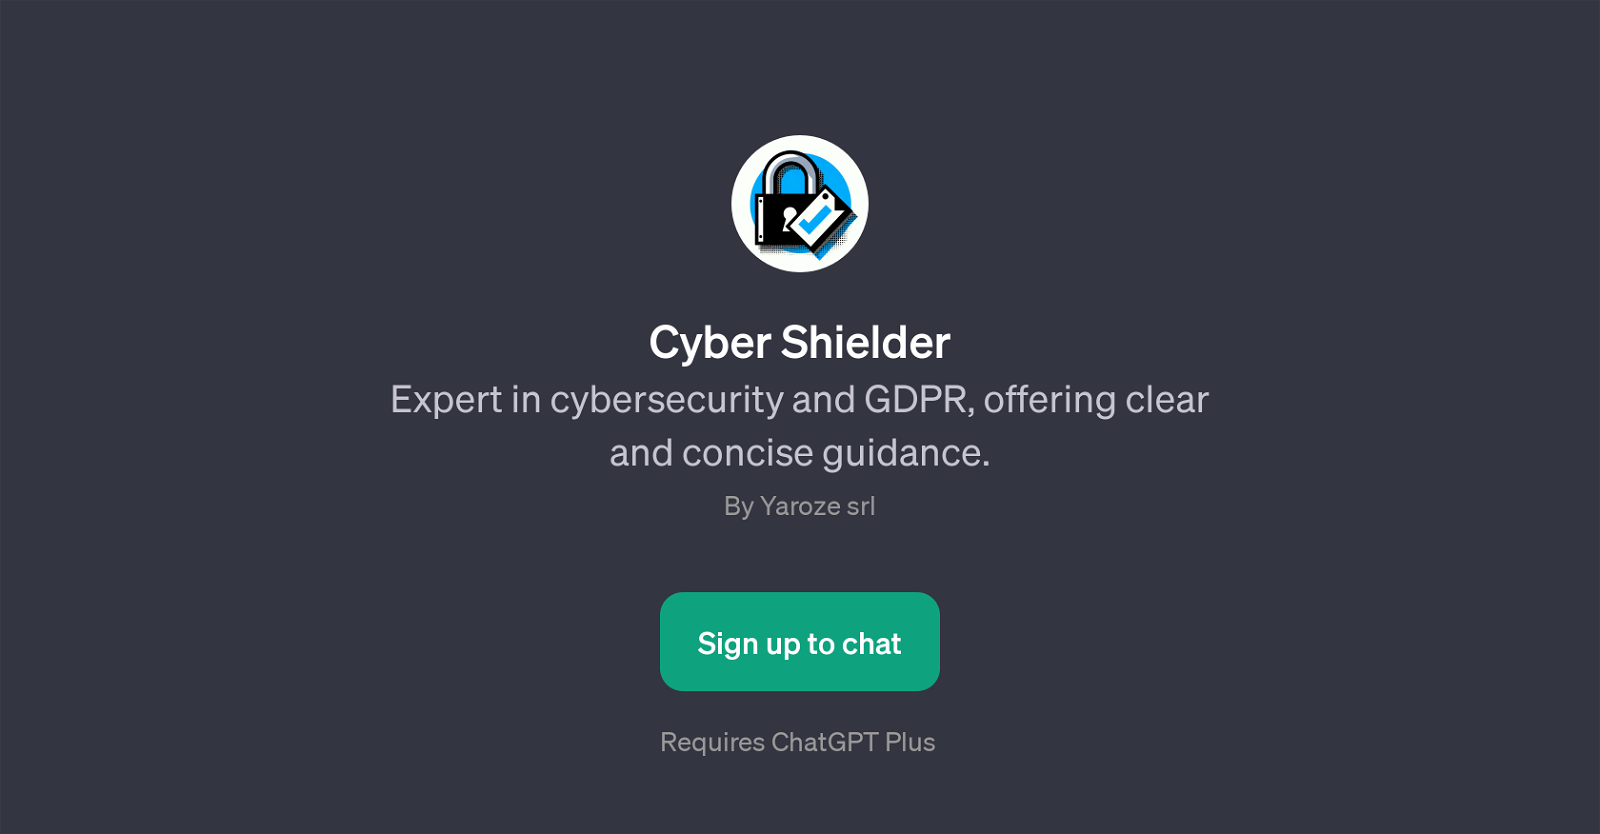 Cyber Shielder website